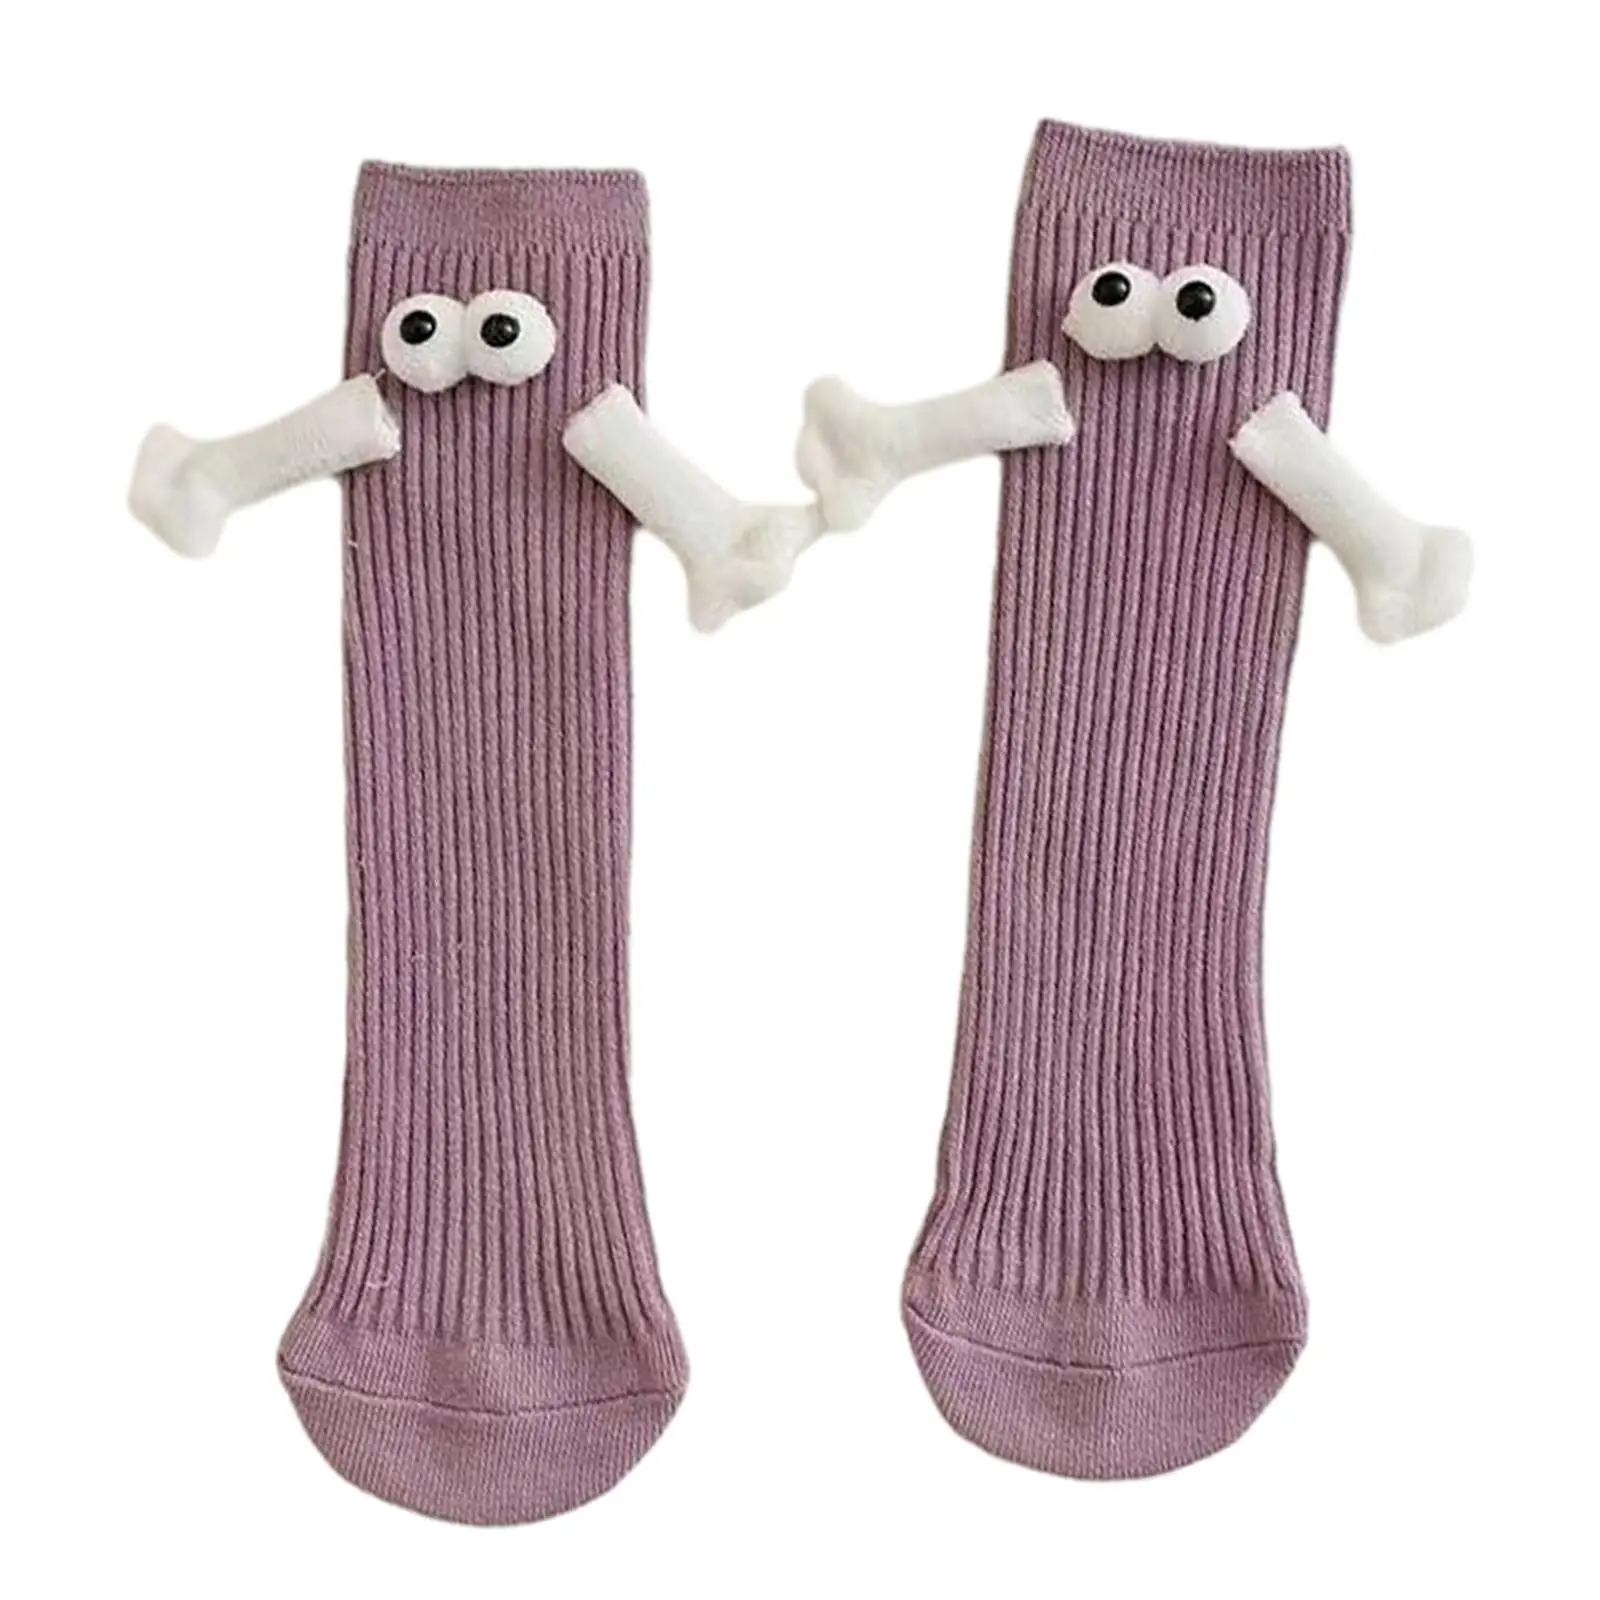 Mid Tube Socks Magnetic Friendship Socks Funny Novelty Socks 1 Pair 3D Doll Eyes Couple Socks for Friends Lovers Sisters